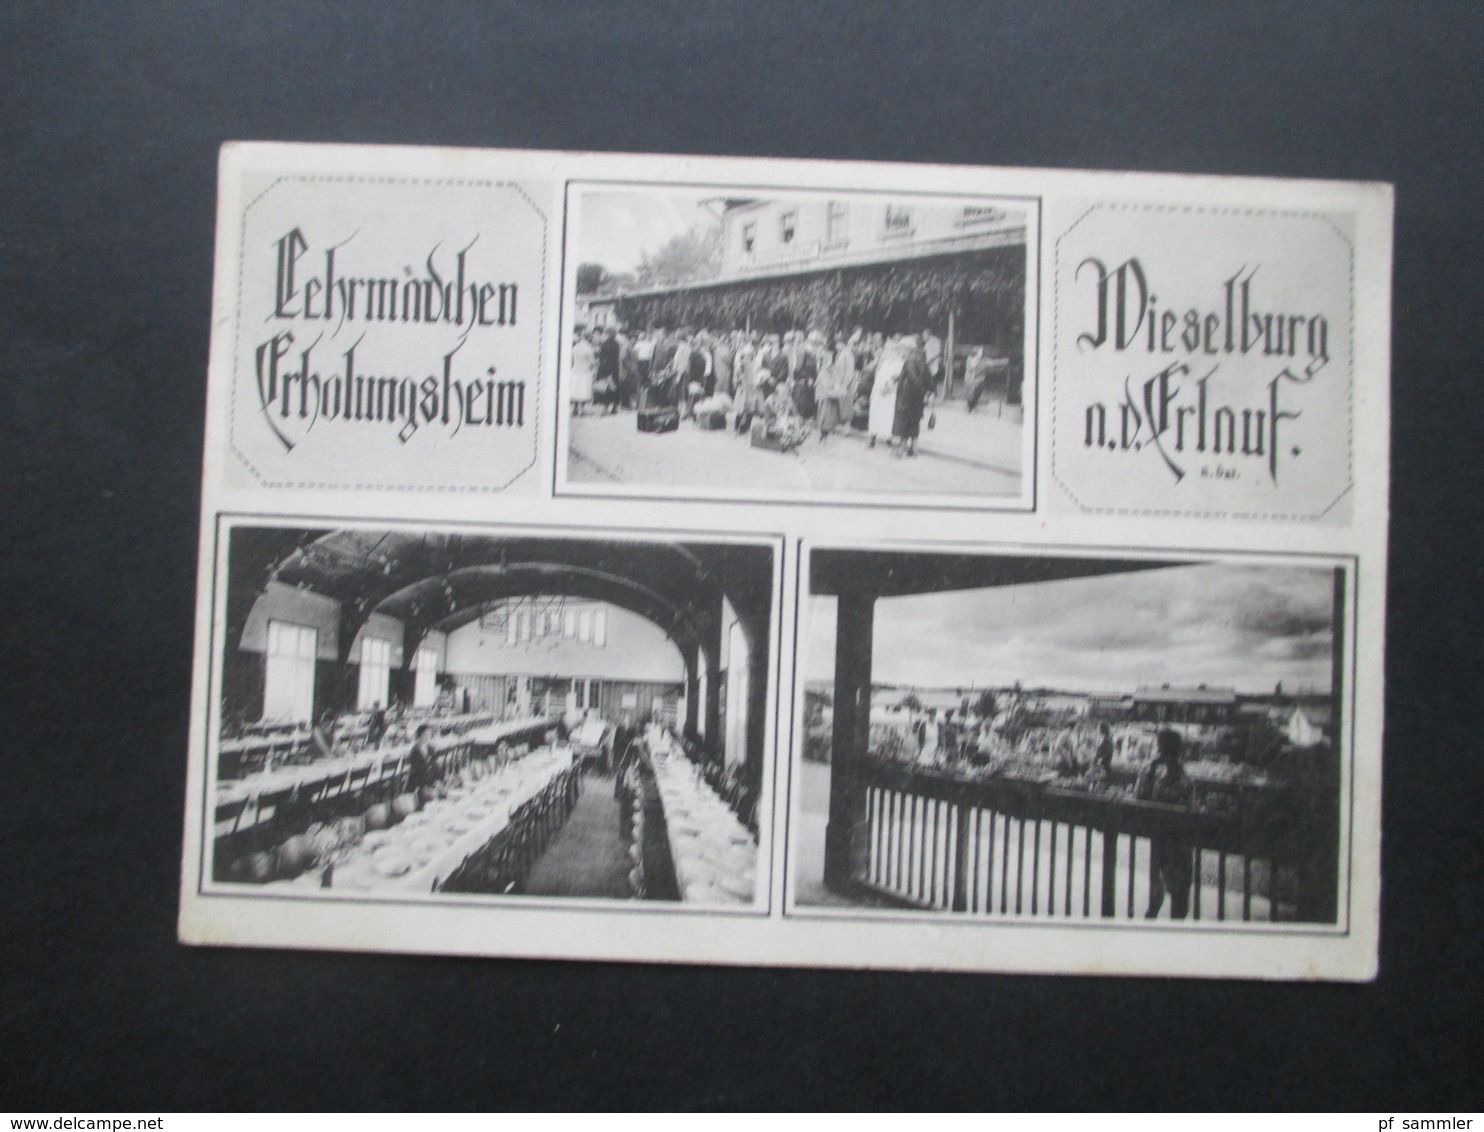 Österreich 1925 Mehrbildkarte Lehrmädchen Erholungsheim Wieselburg A.d. Erlauf Phot. J. Perscheid, Wien III - Hotel's & Restaurants